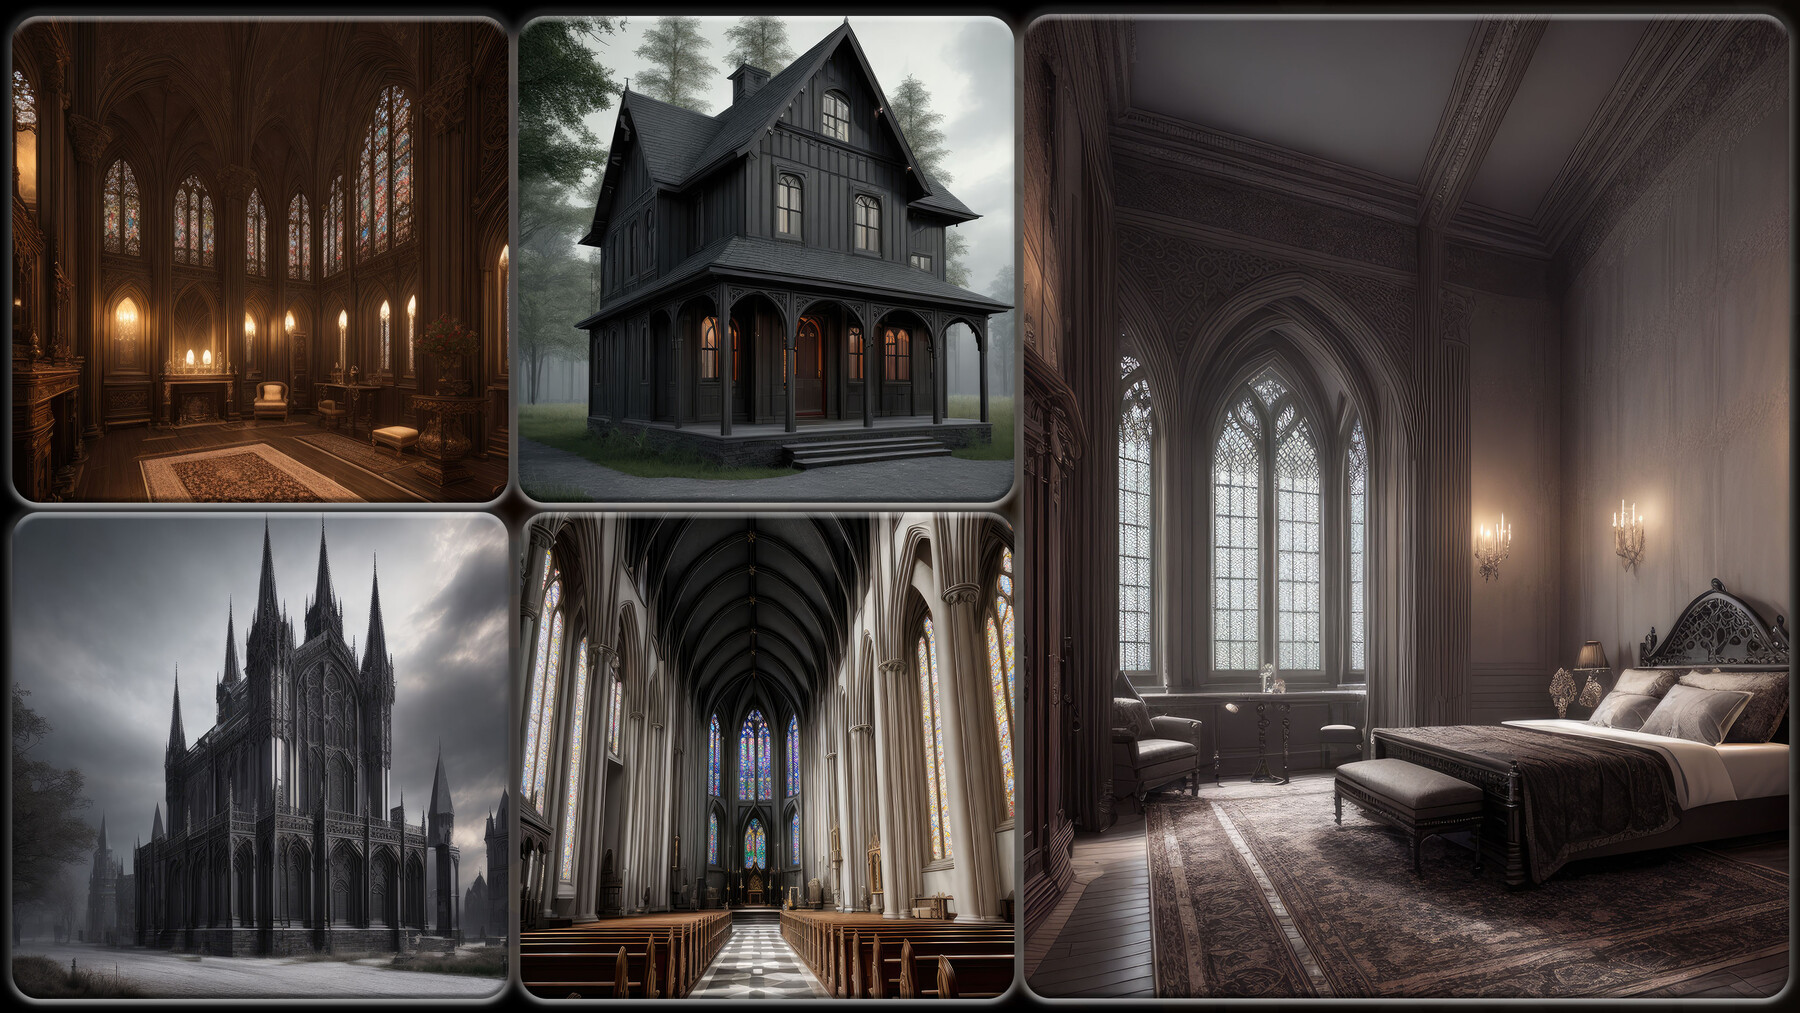 gothic architecture interior design